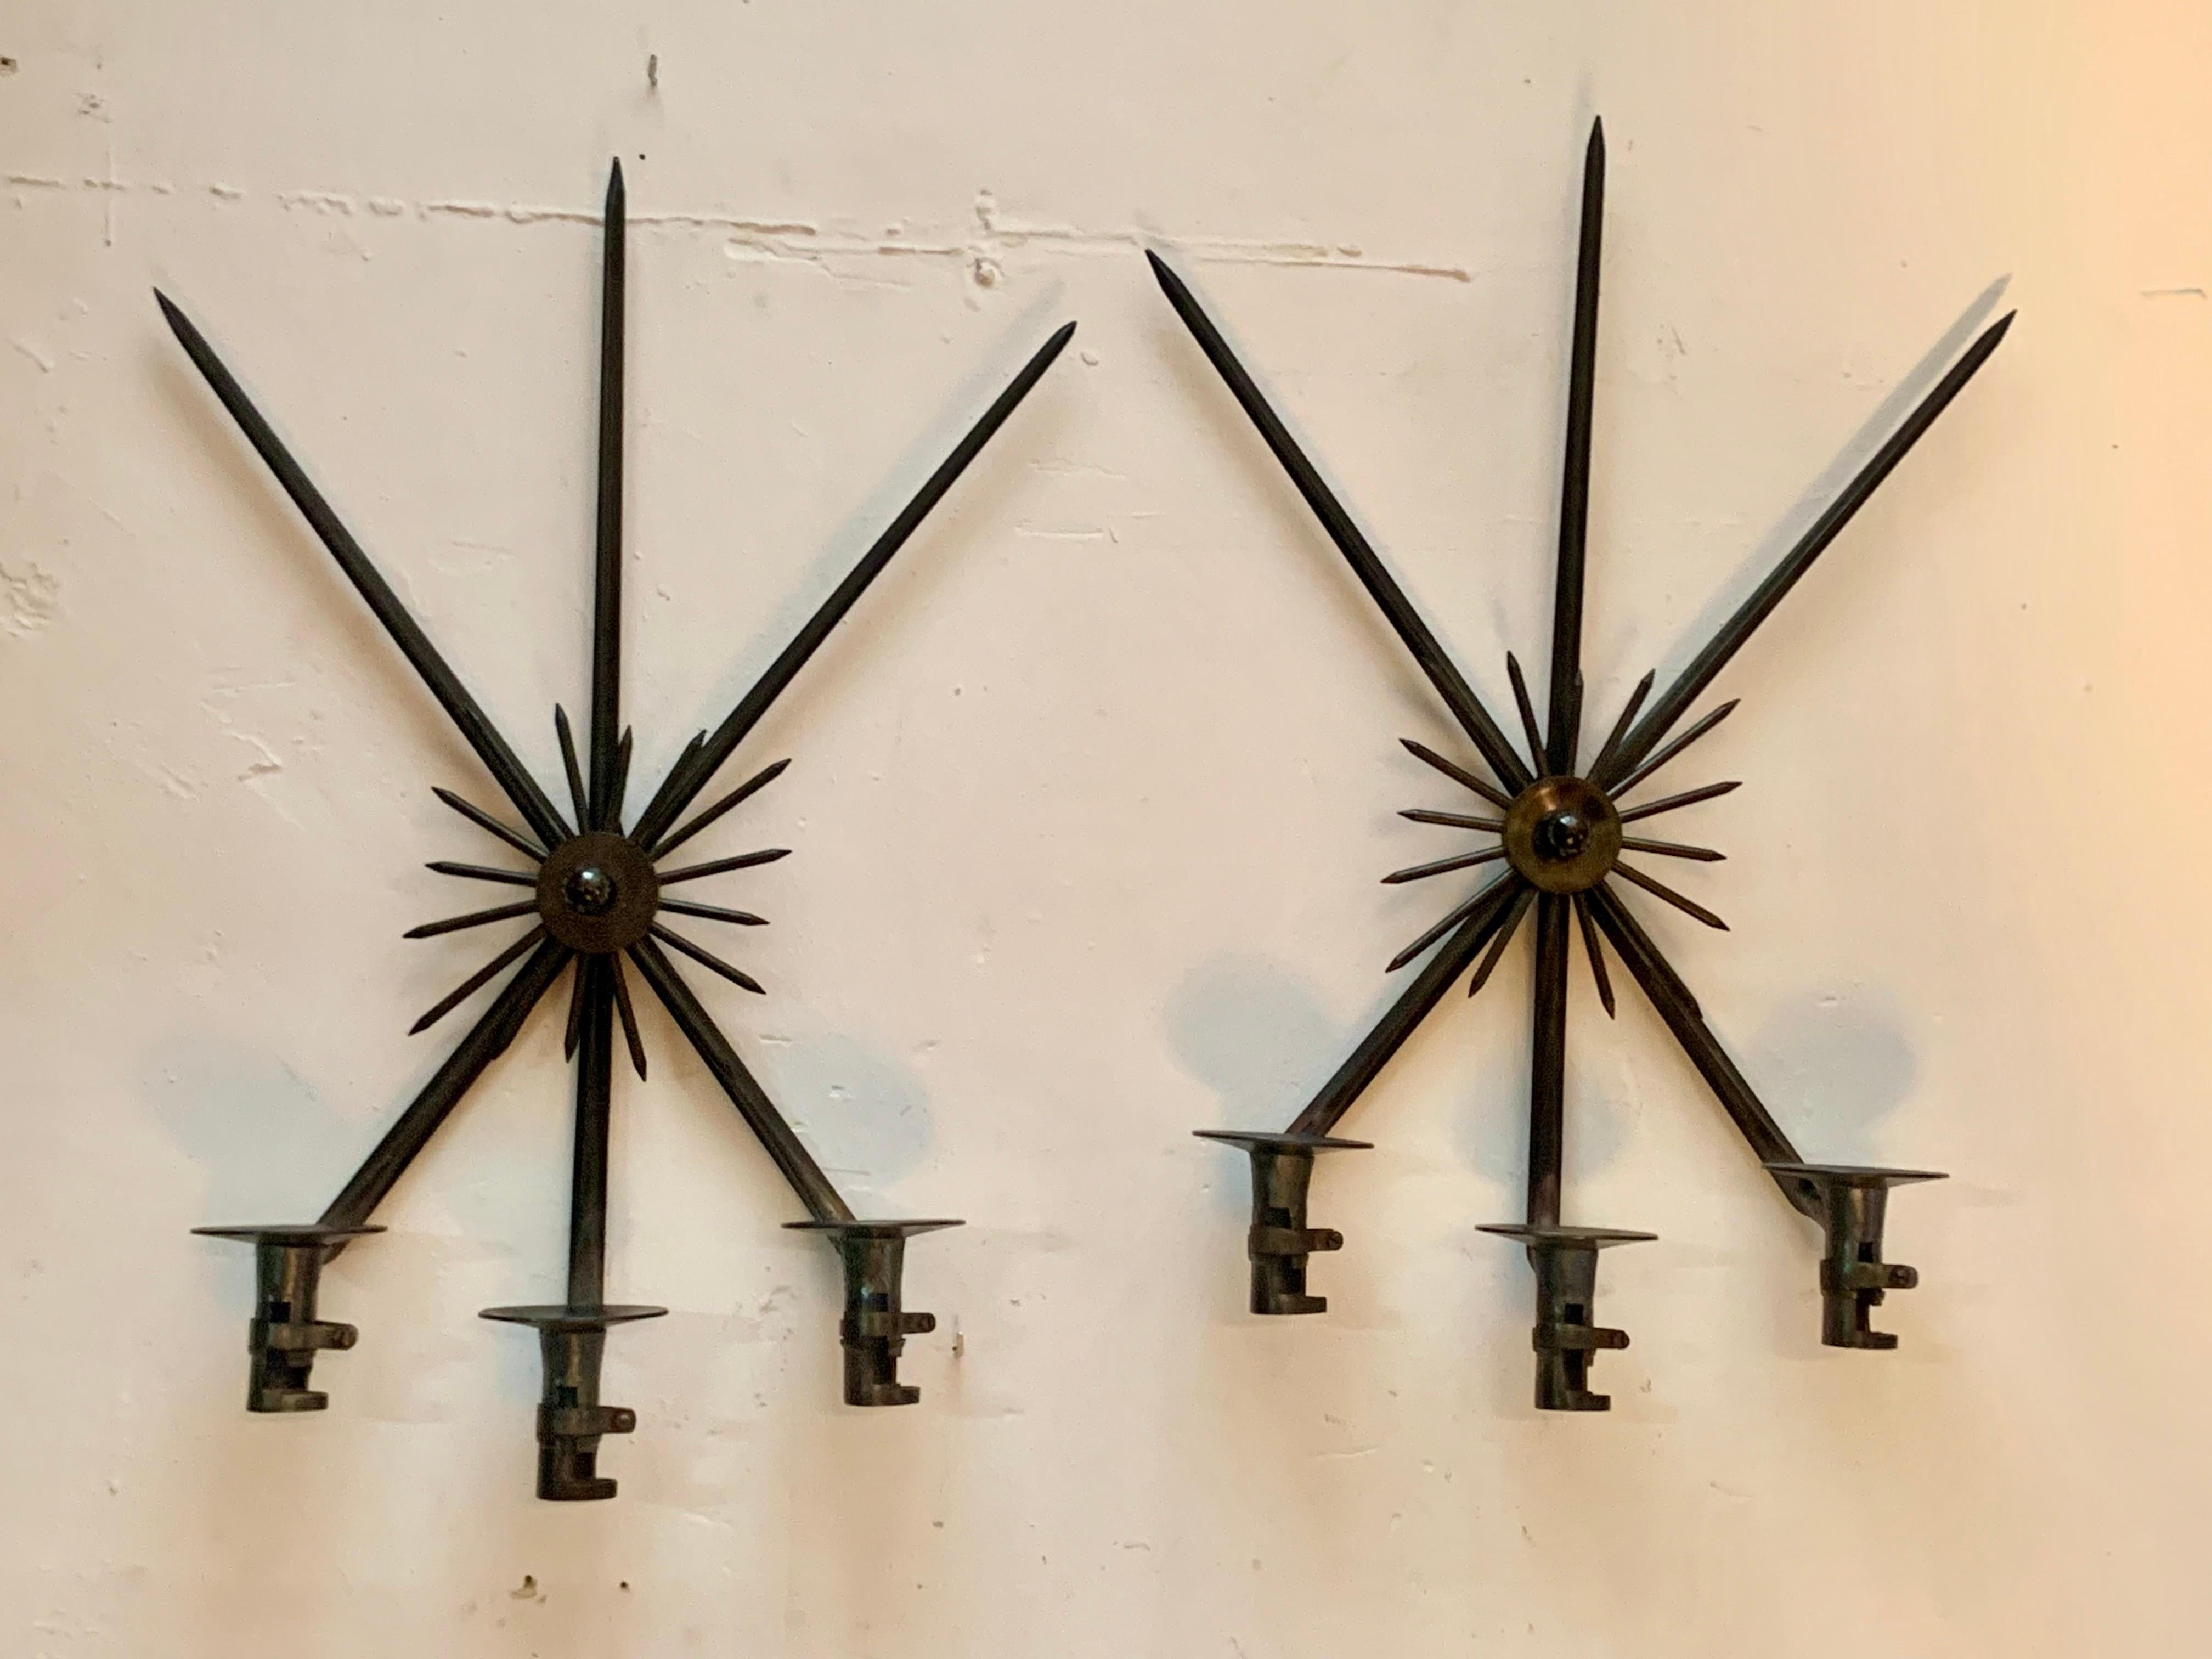 Ein Paar origineller Wandleuchter mit einer natürlichen Kerze, hergestellt aus alten Bajonett-Waffen, in Form eines Kreuzes mit drei Sockeln für die Kerzen und einem zentralen Ornament in Form von Sonnenstrahlen.